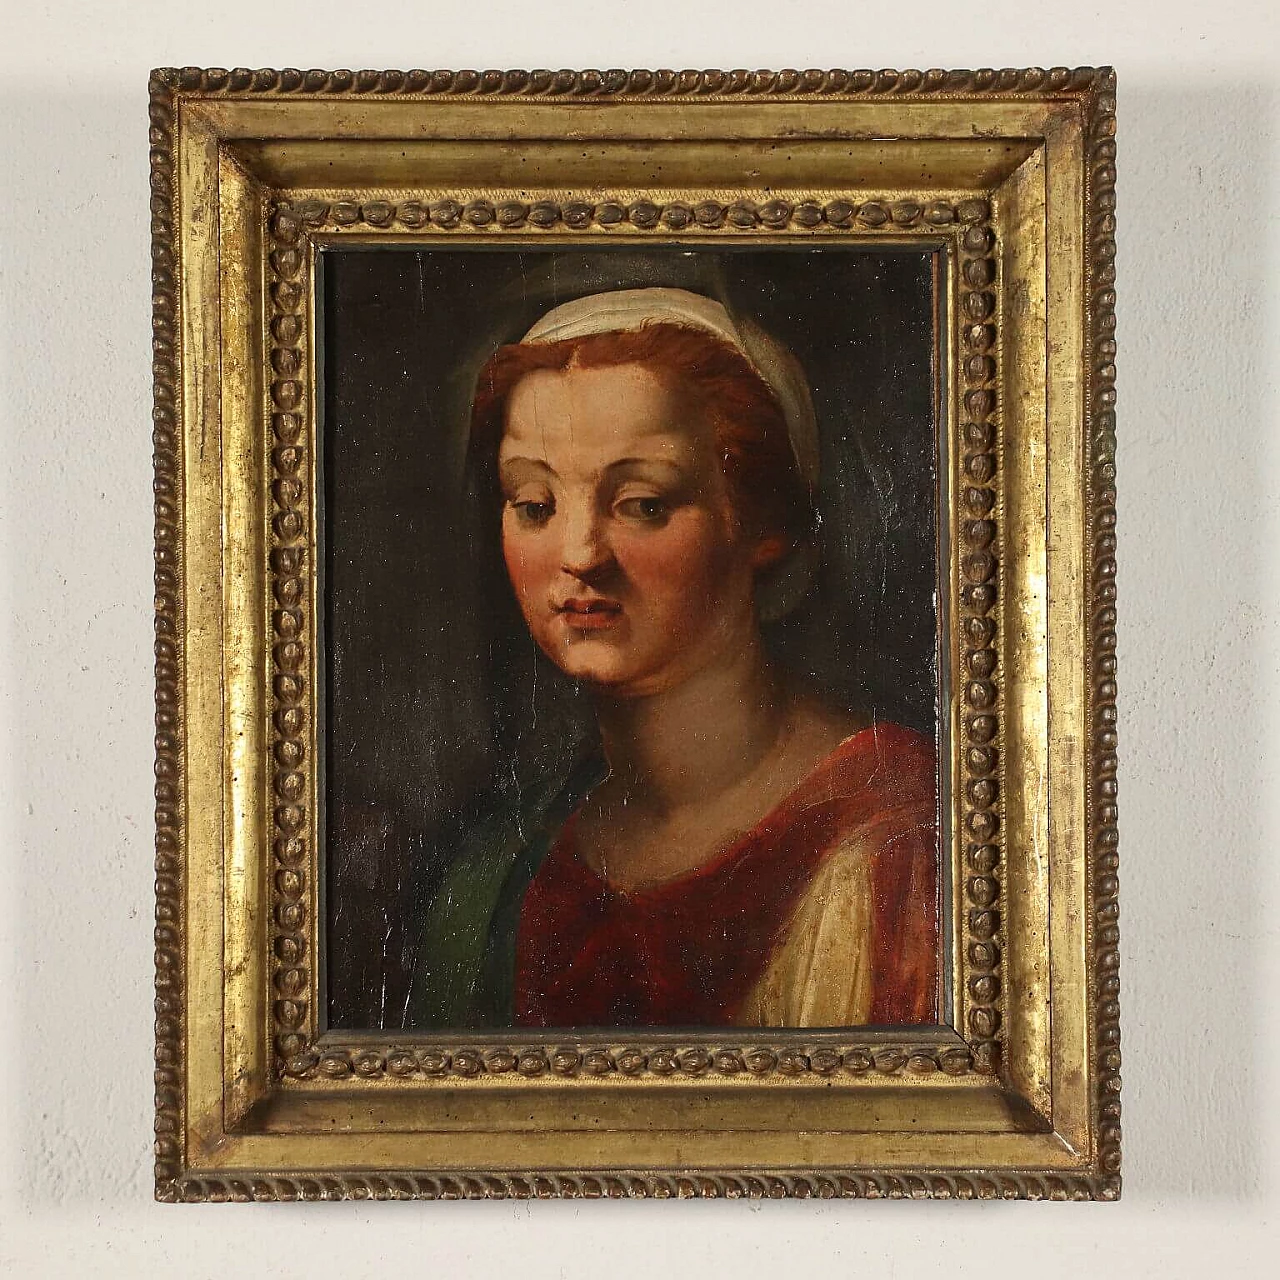 Testa femminile alla maniera di Andrea del Sarto, tempera su tavola, '500 2